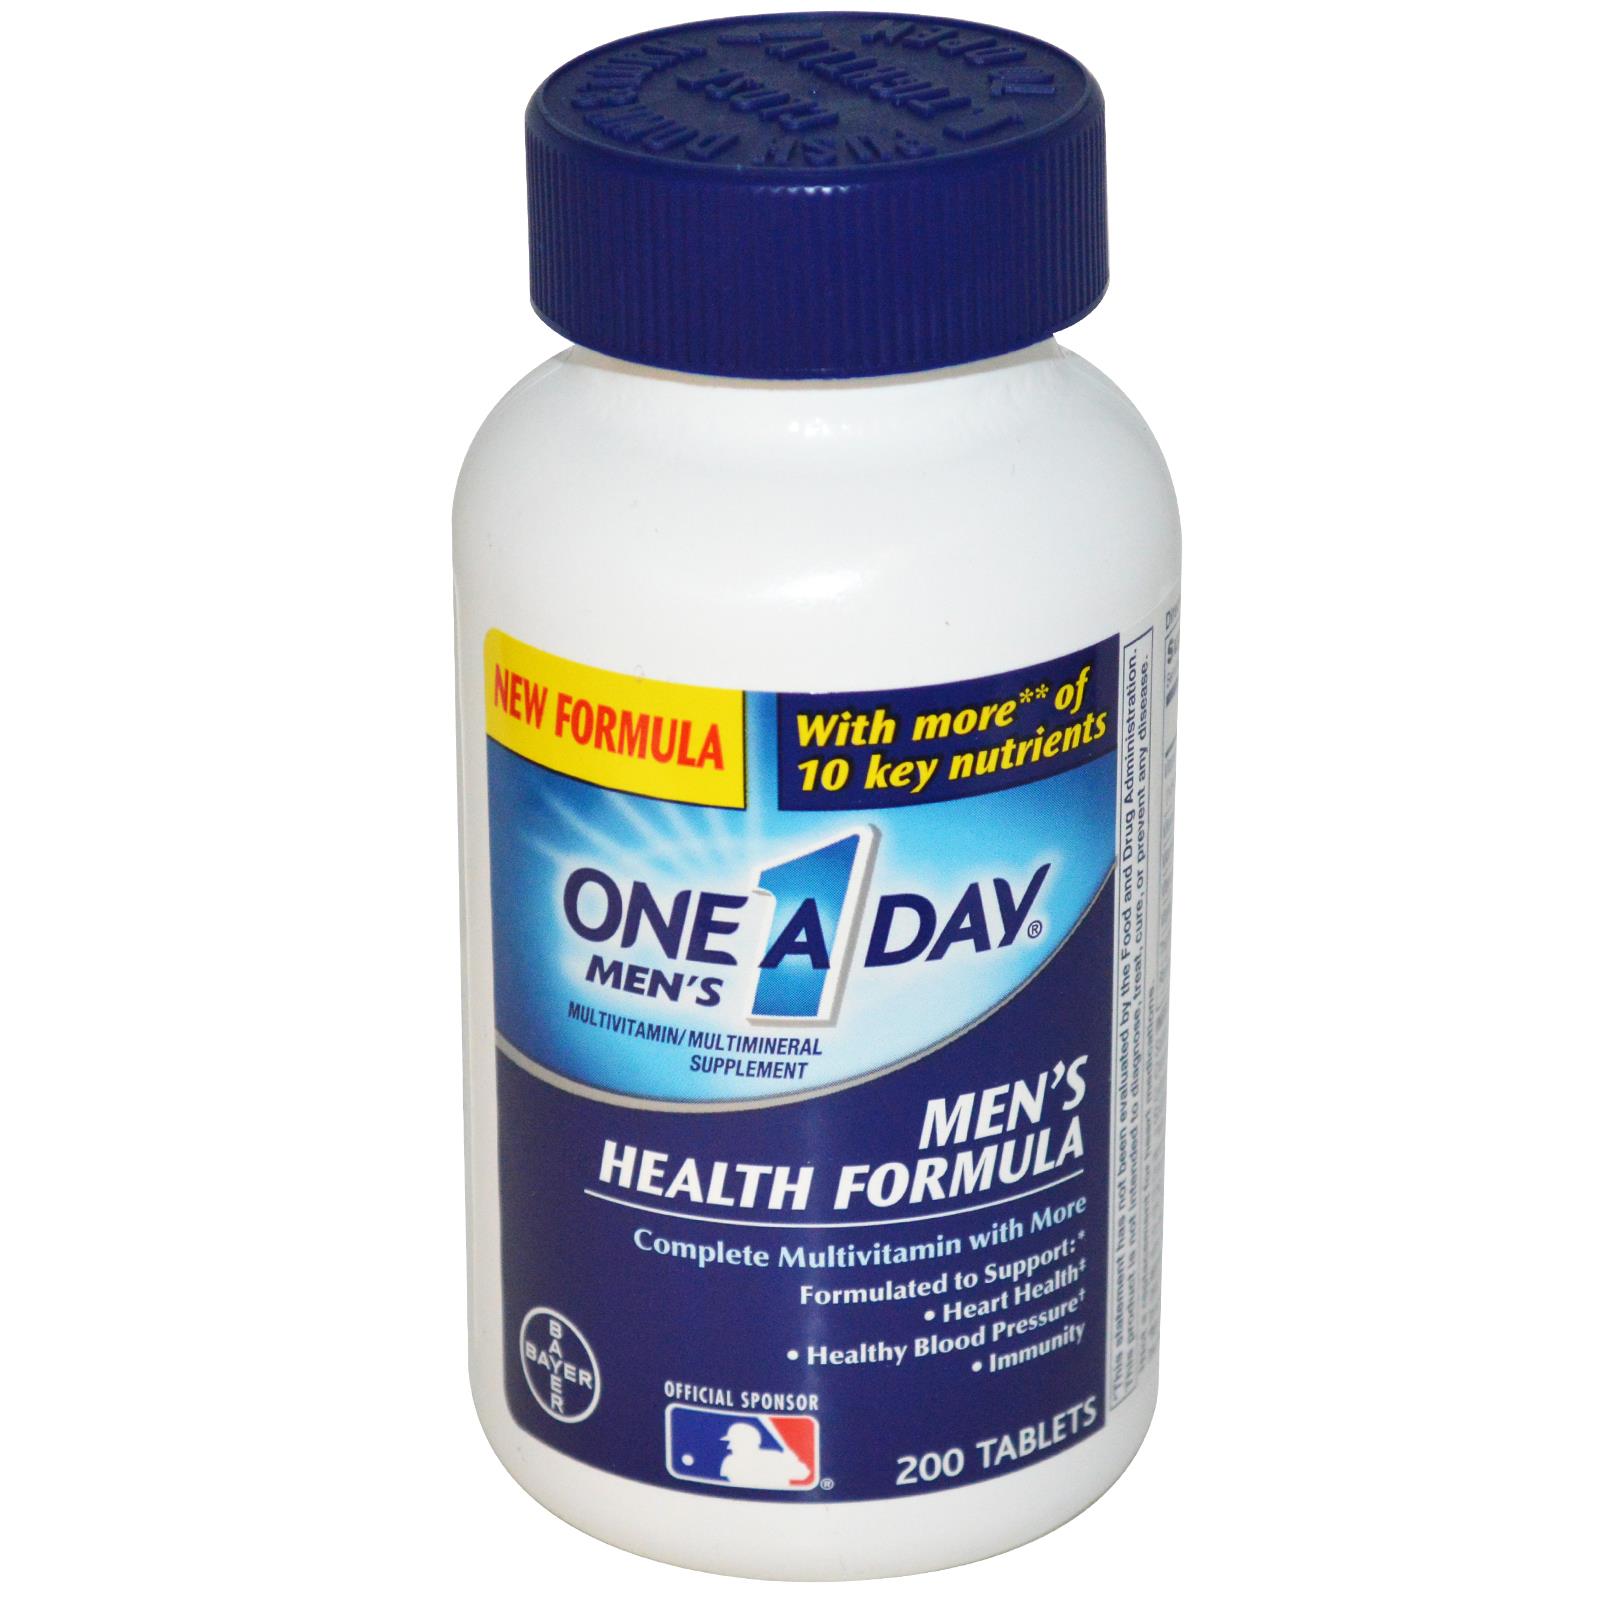 One a Day Men's Health Formula giúp tim, mạch, huyết áp khỏe mạnh